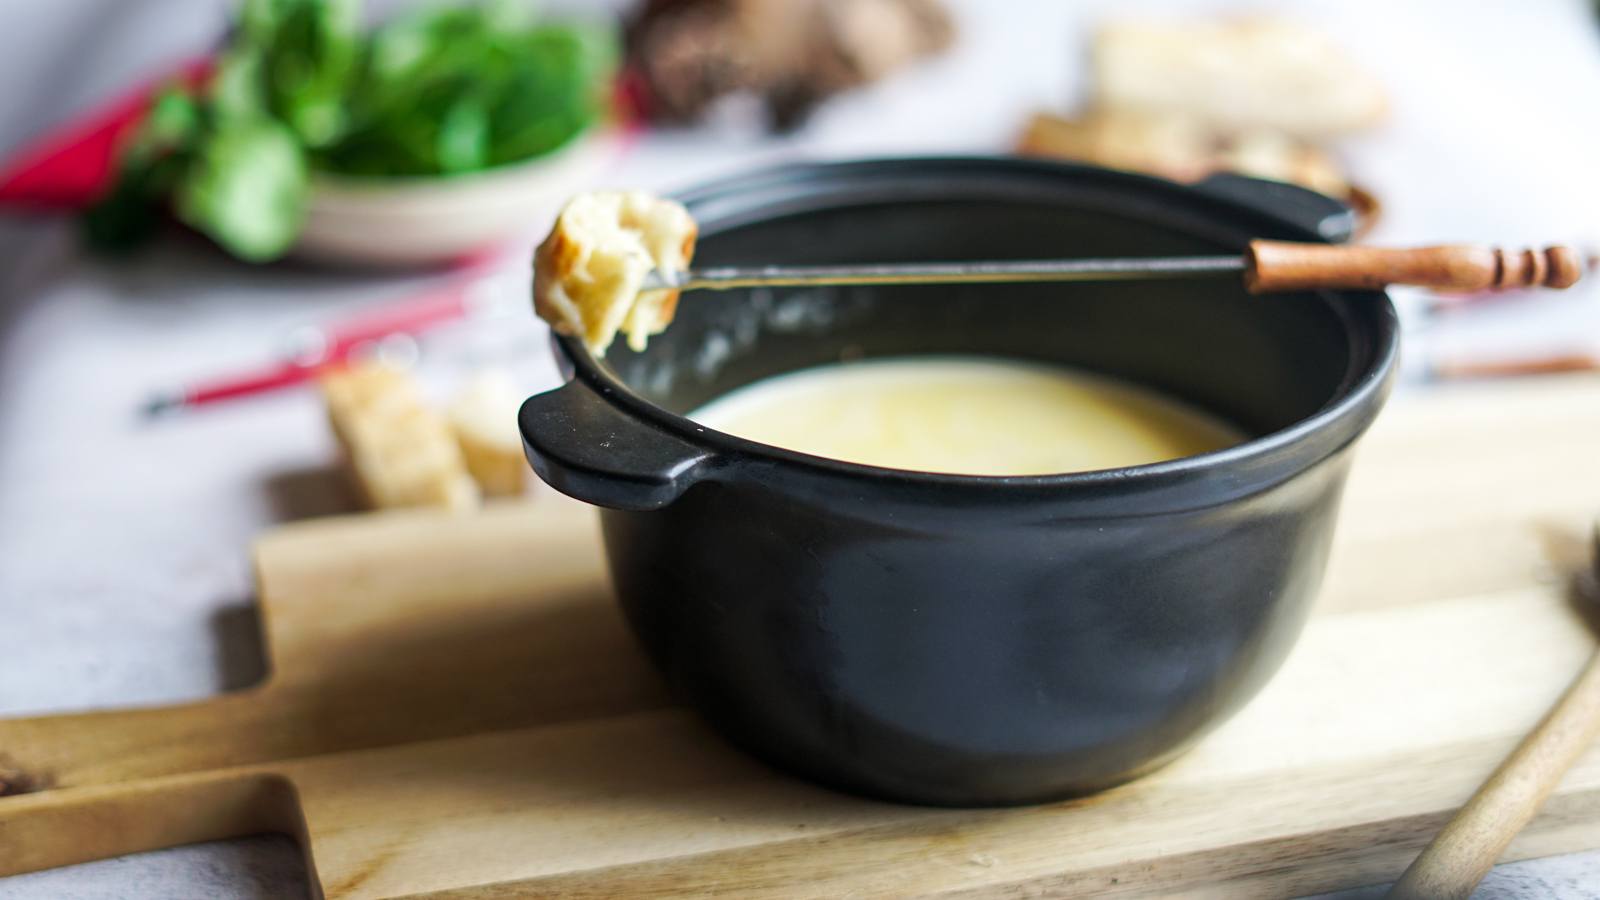 Recette de fondue bourguignonne - Le blog